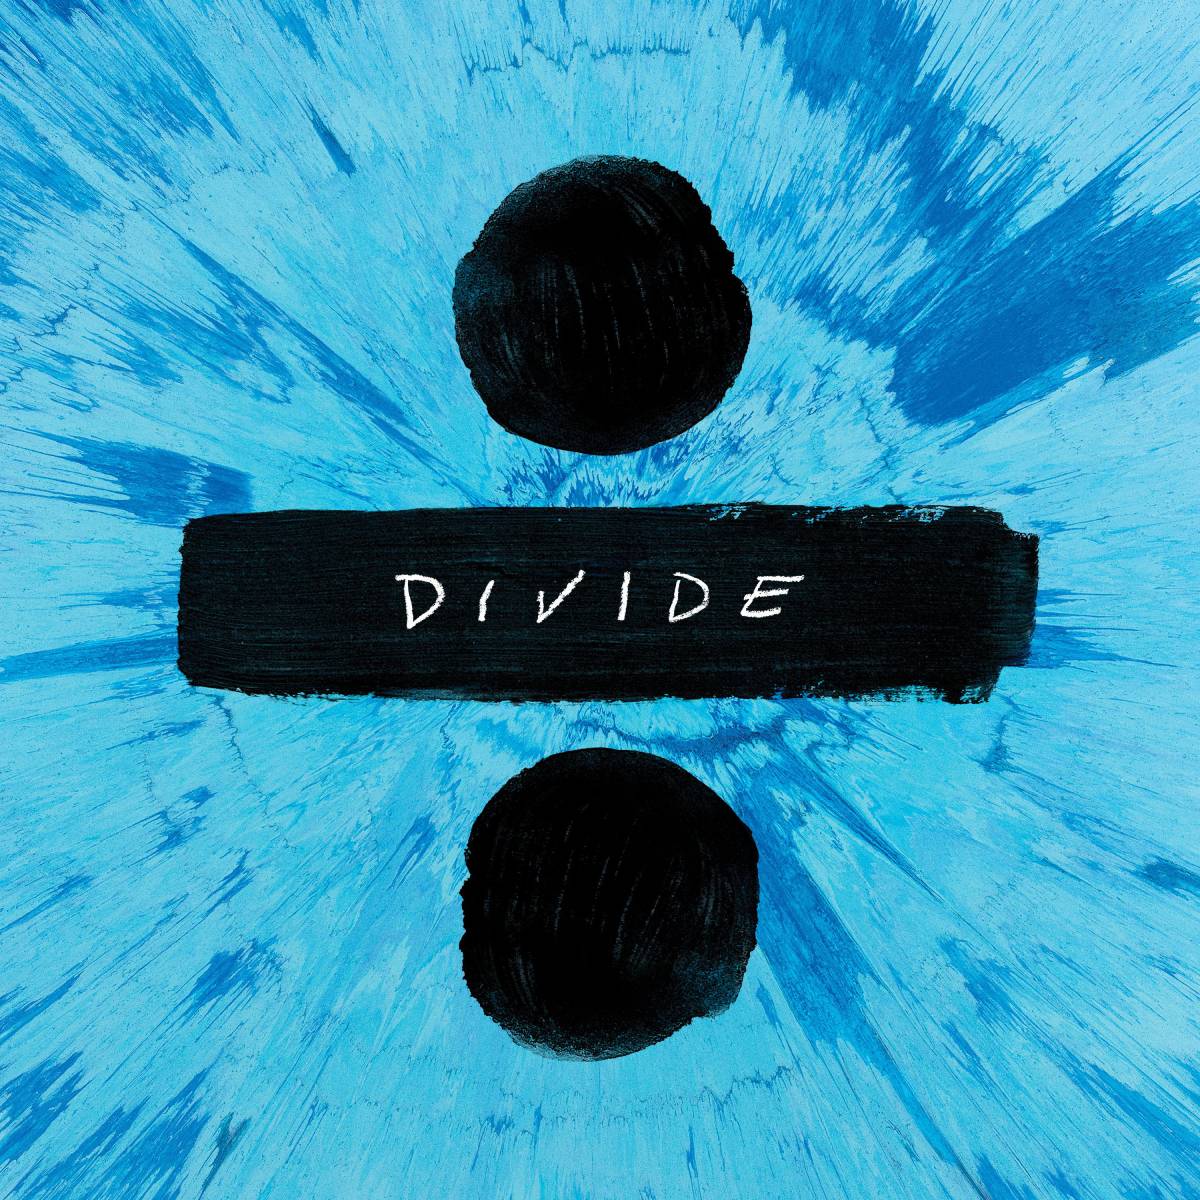 Divide (terceiro álbum de Ed Sheeran)